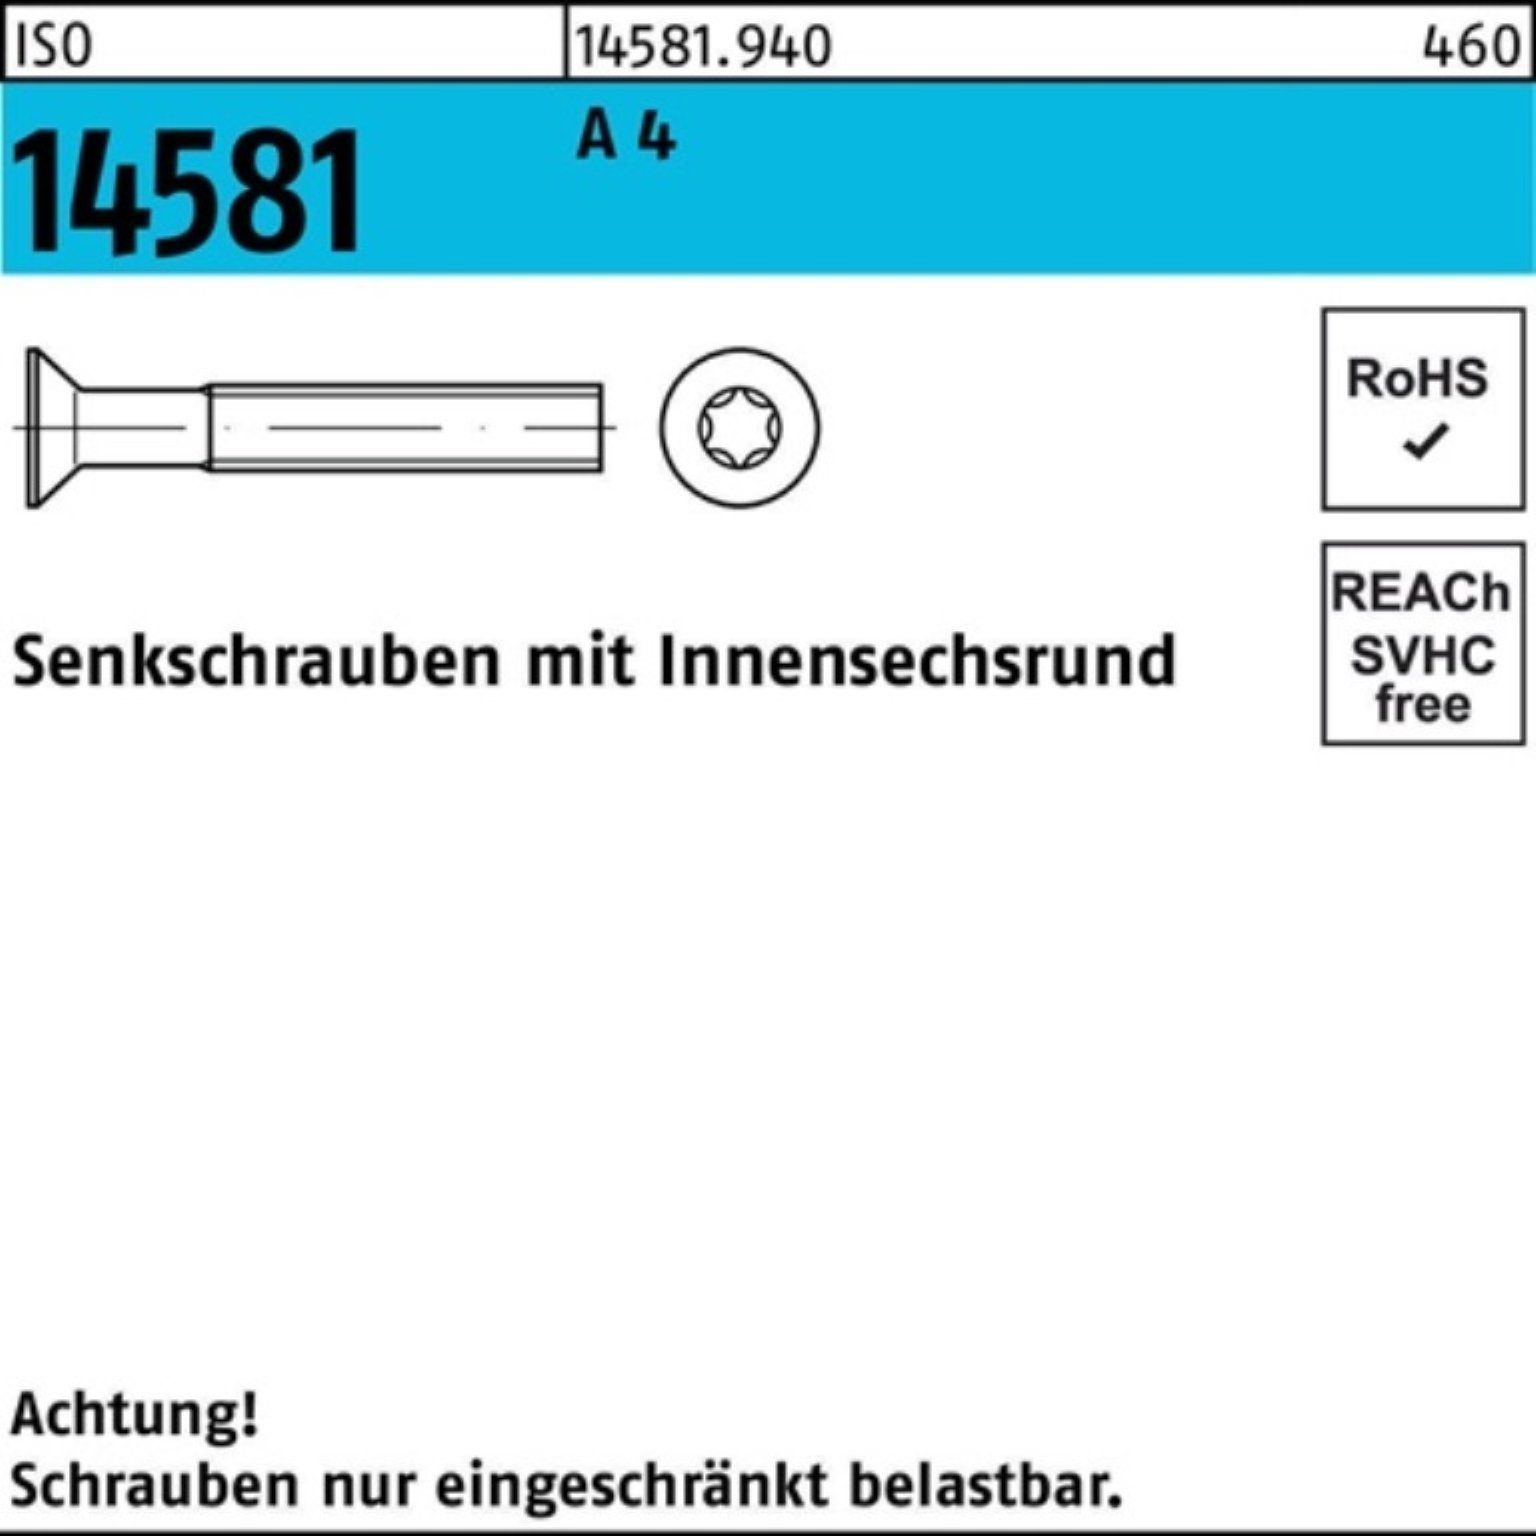 Reyher Senkschraube 500er Pack Senkschraube 500 T25 ISR M5x A 14 ISO ISO Stück 4 20 14581